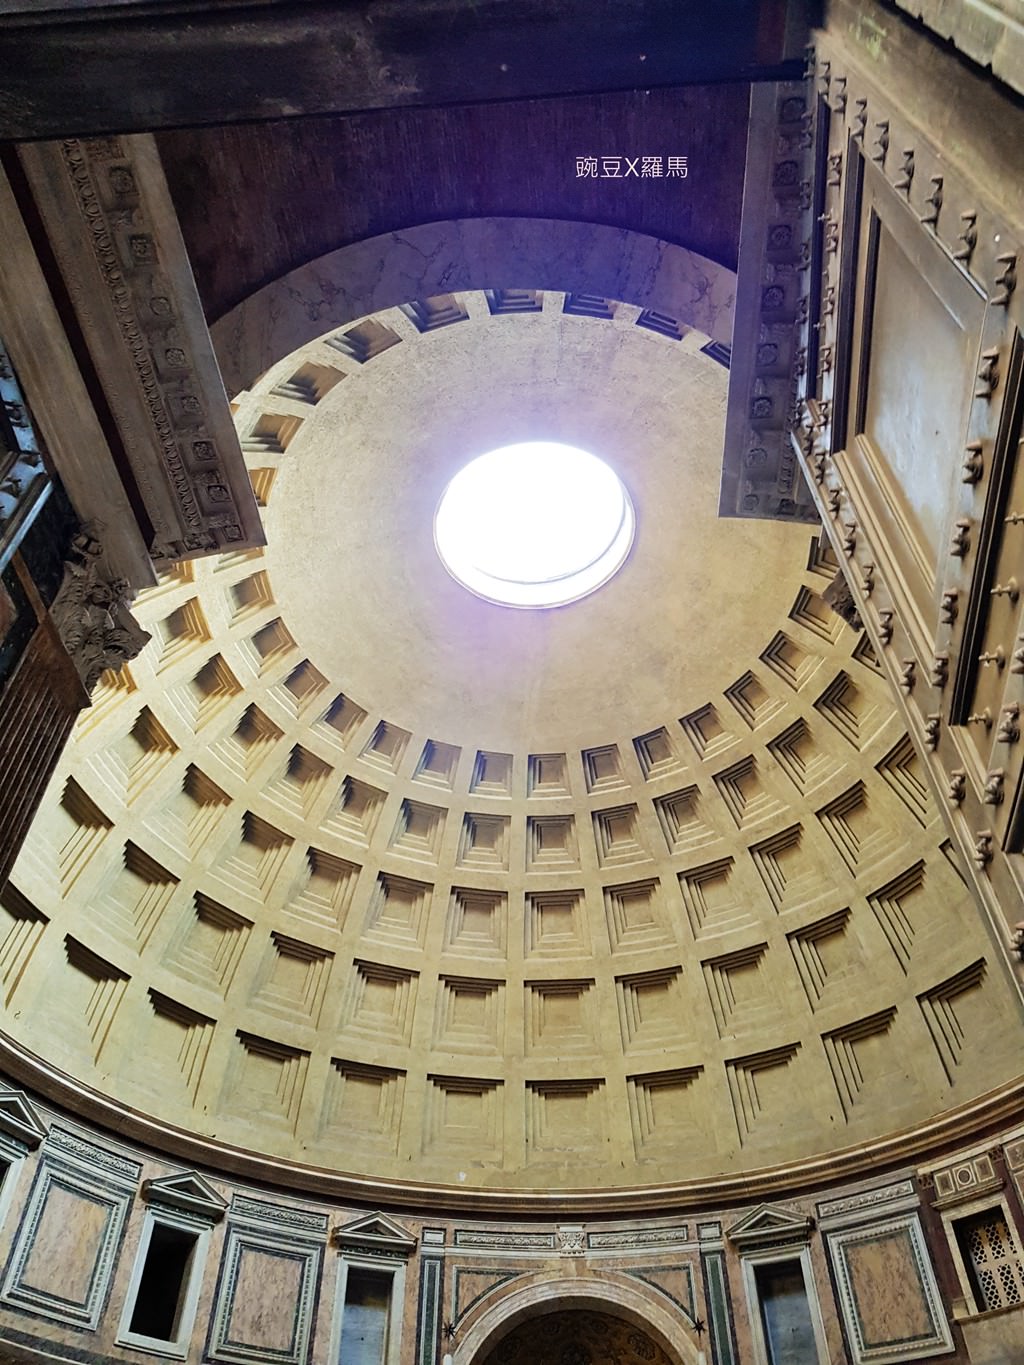 萬神殿 Pantheon